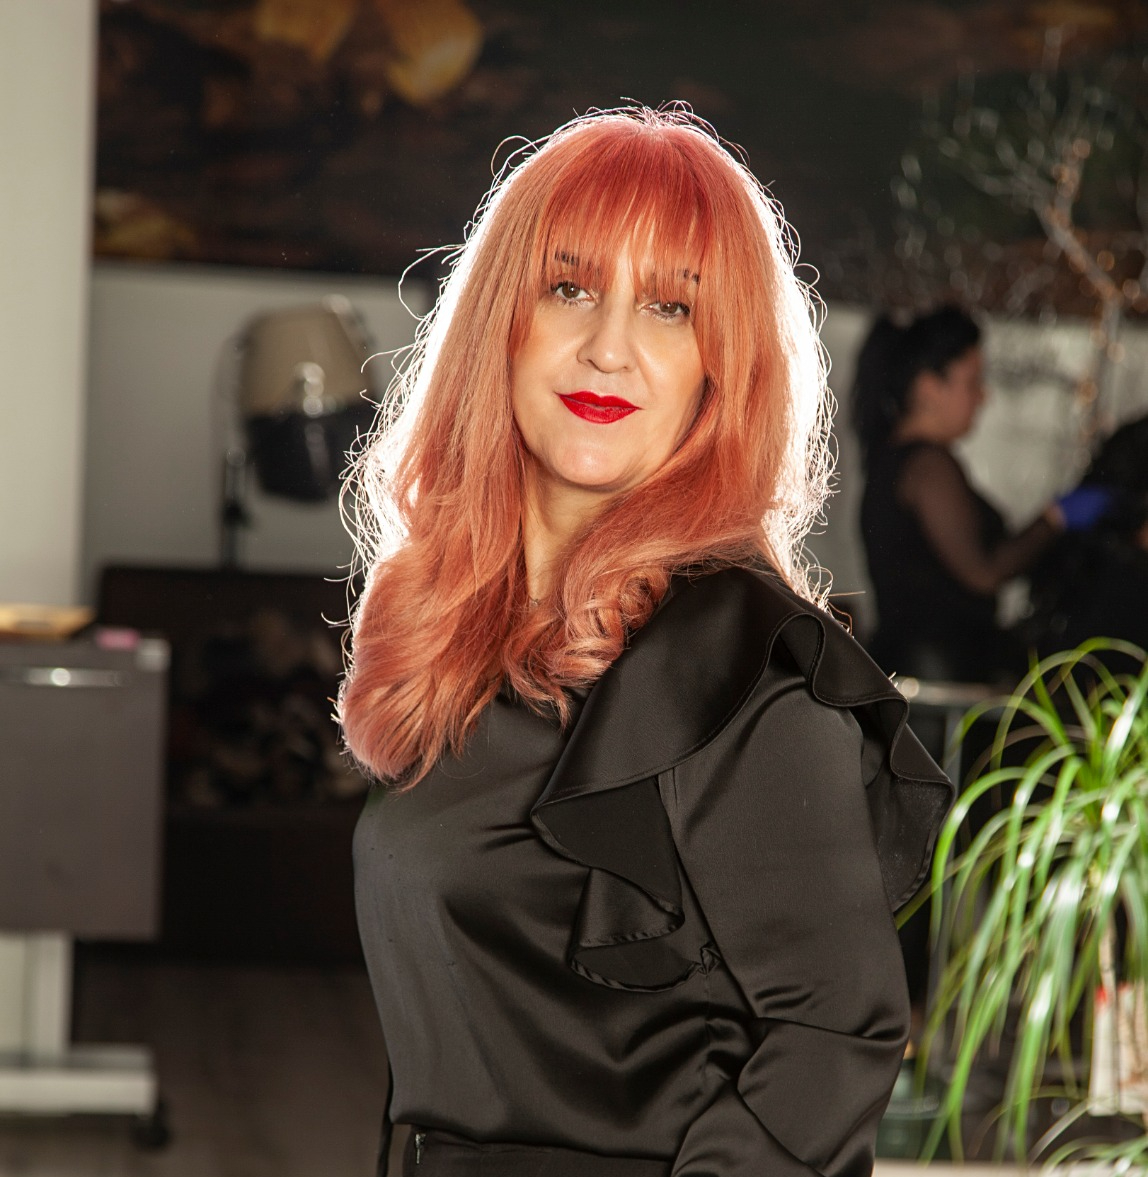 Fotografia de Ana Garro VIdal peluquera y estilista de totana murcia propietaria del salon de belleza AnaGarro con más de 30 años de experiencia en el sector.